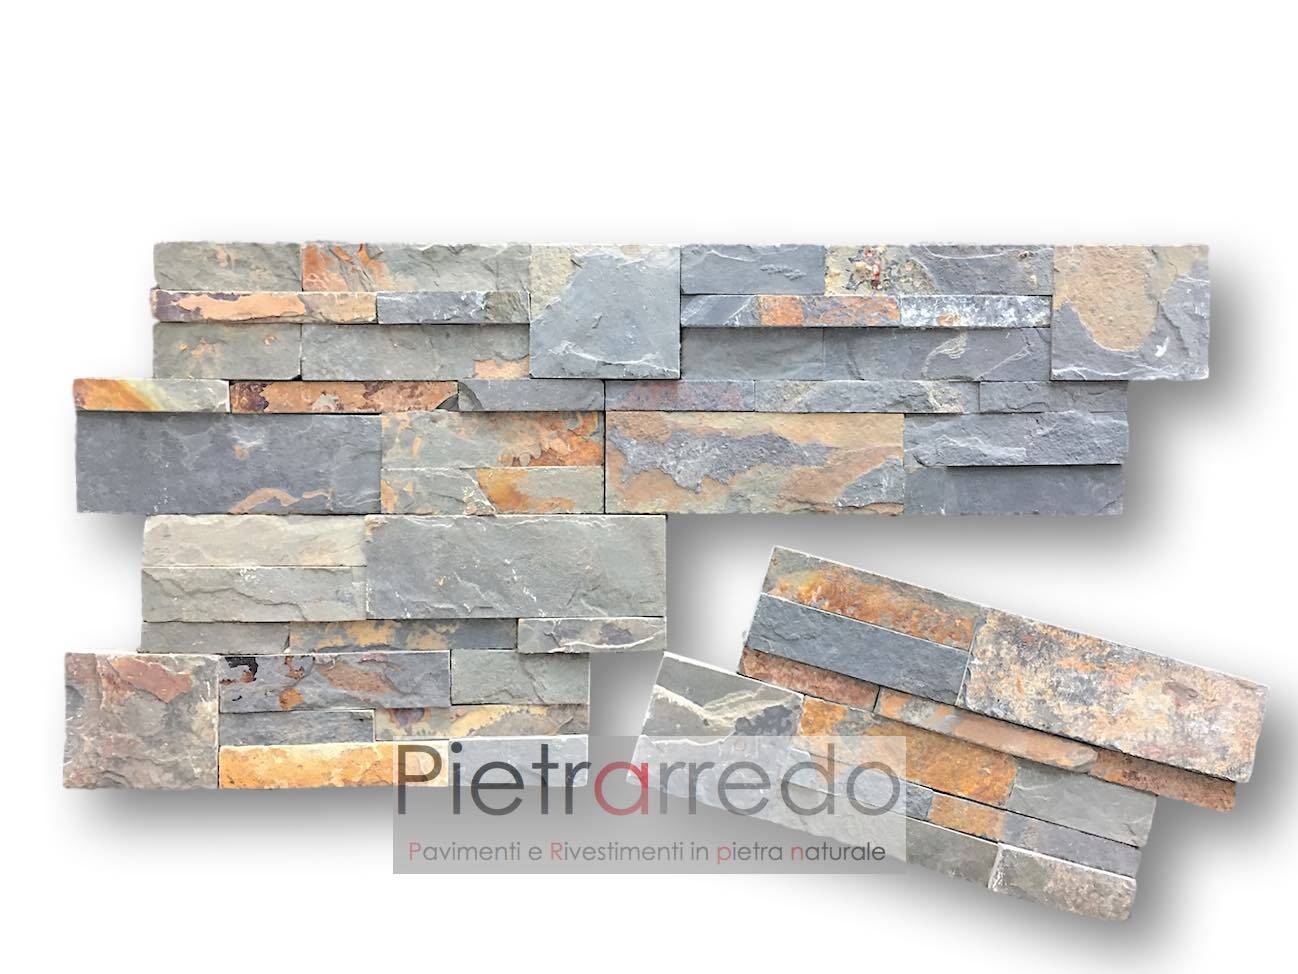 pietrarredo-rivestimento-spaccatello-pietra-ardesia-multicolor-foglia-autunno-prezzo-stone-panel-price-rust-offert